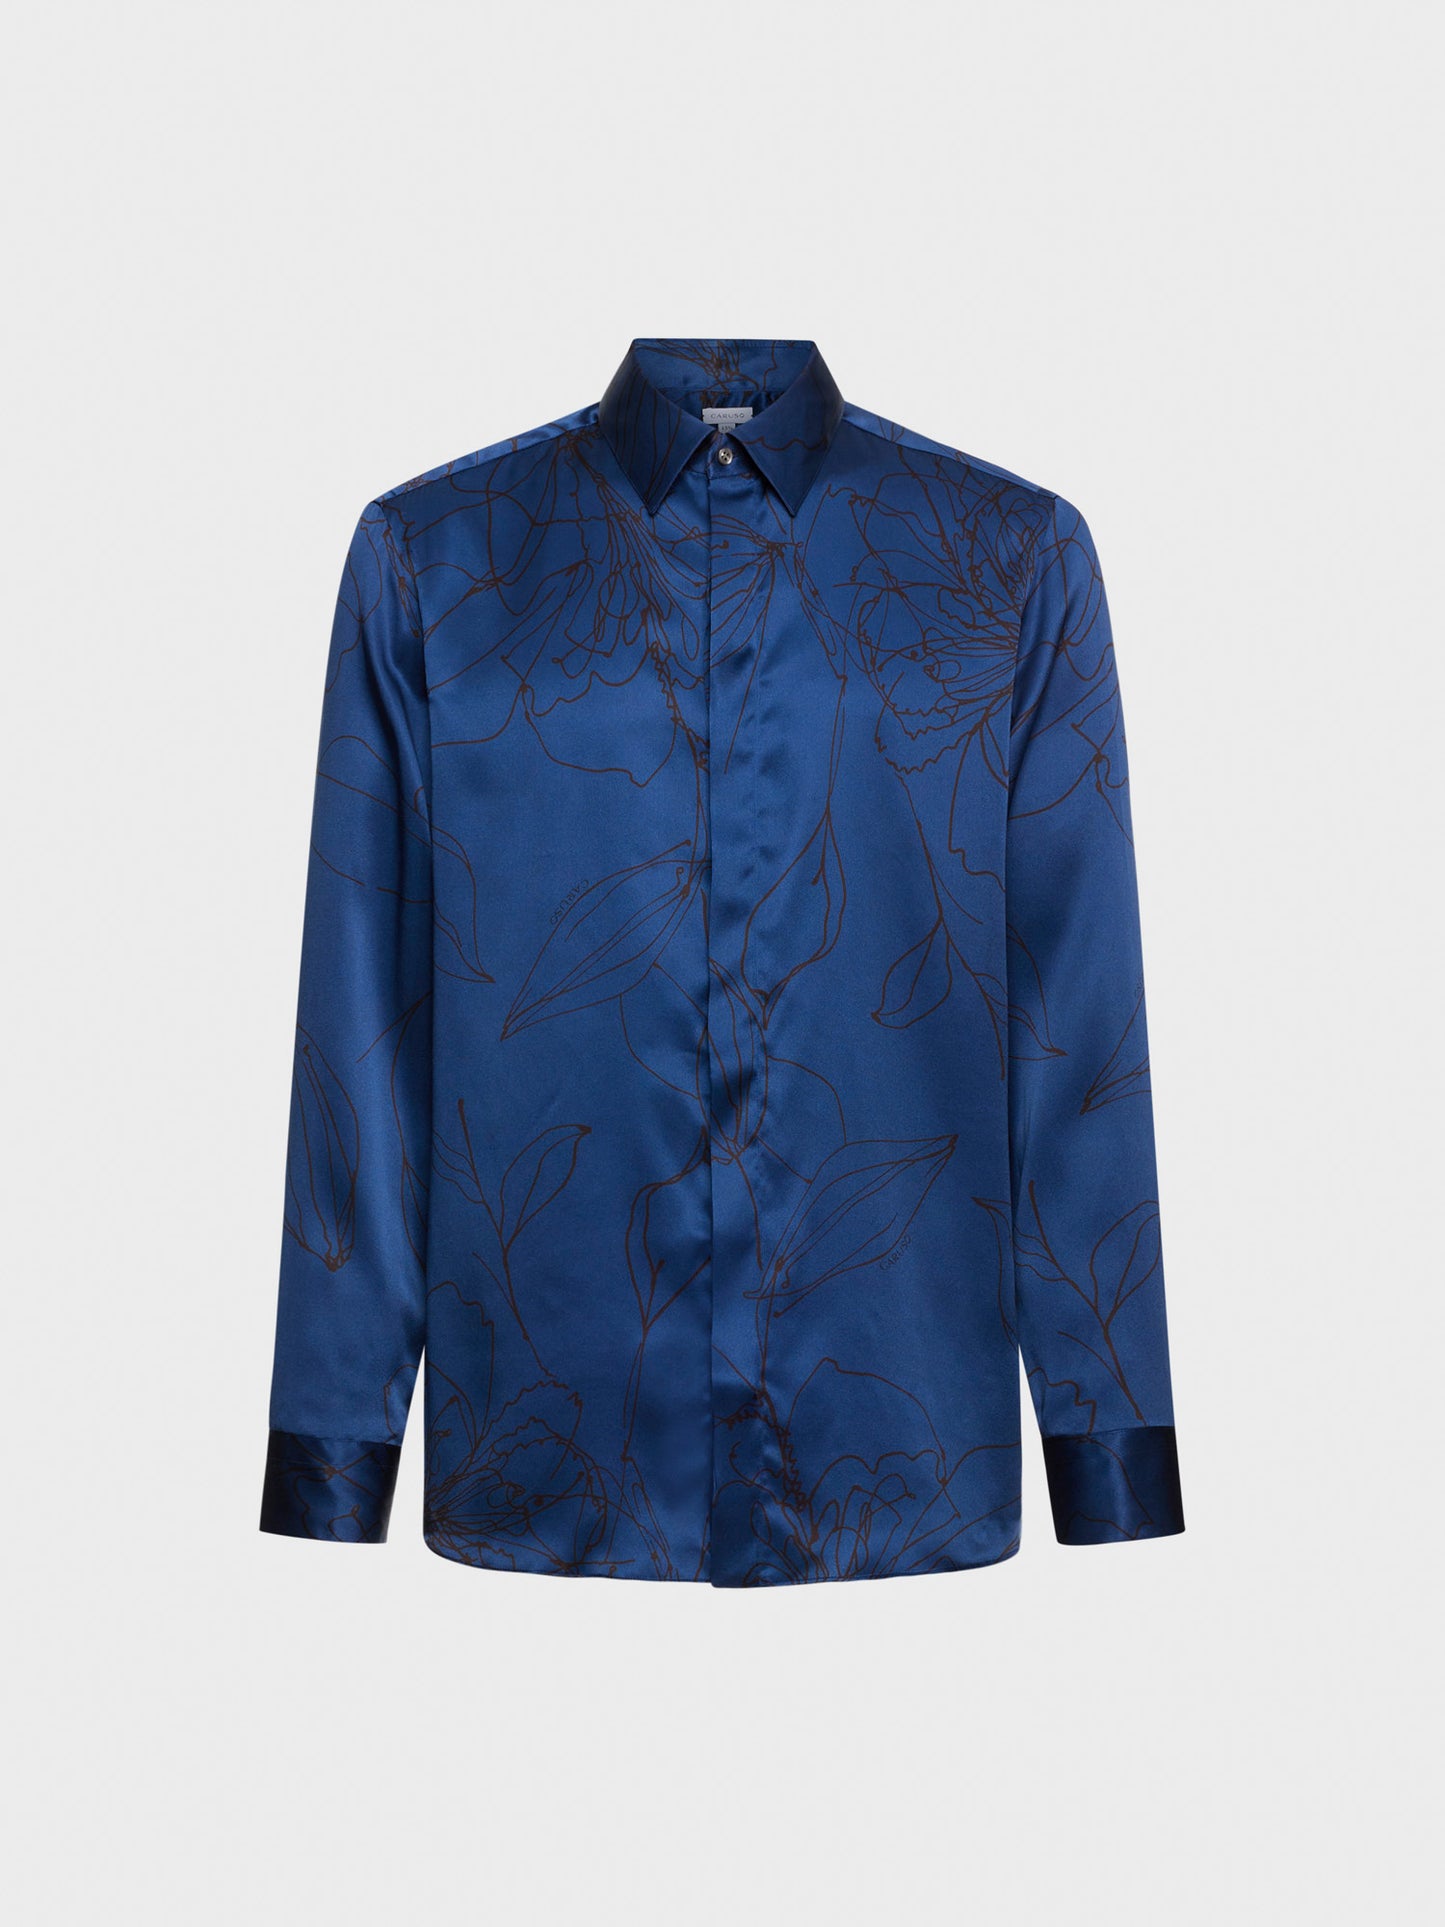 Caruso Menswear Abbigliamento Uomo Camicia in seta floreale blu still